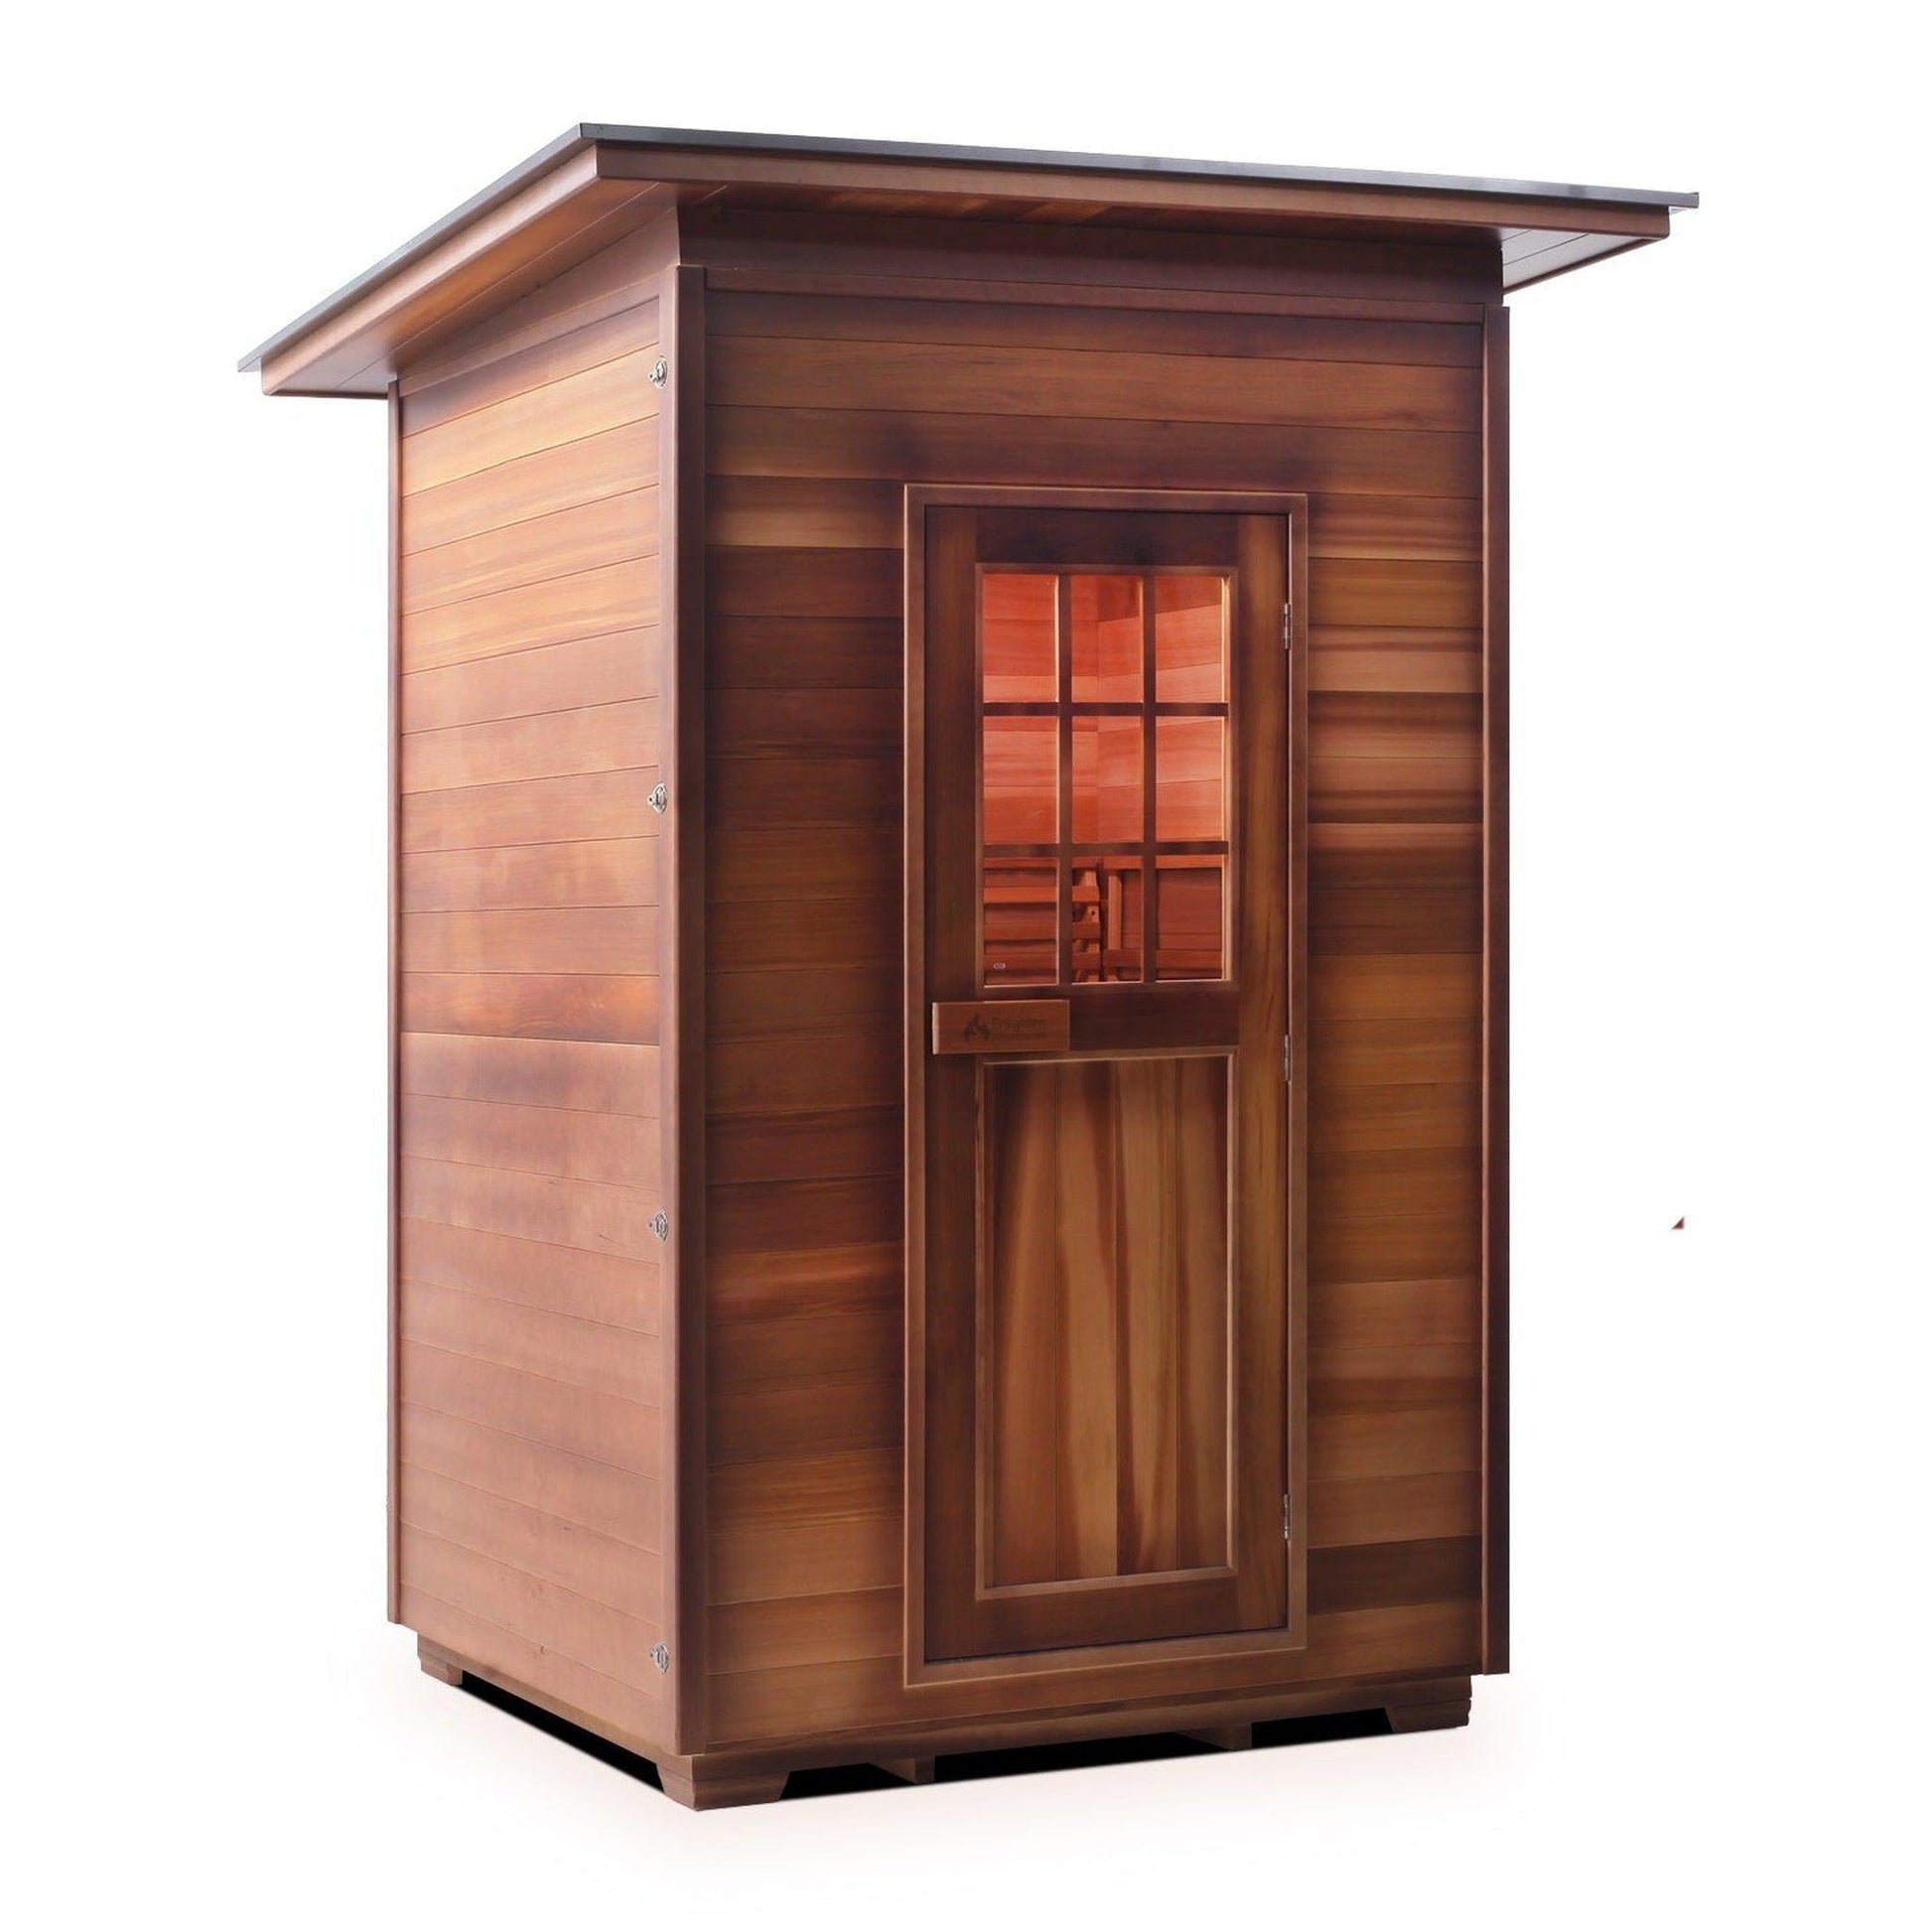 Enlighten SaunaTerra MoonLight 2-Person Slope Roof Dry Traditional Outdoor Sauna